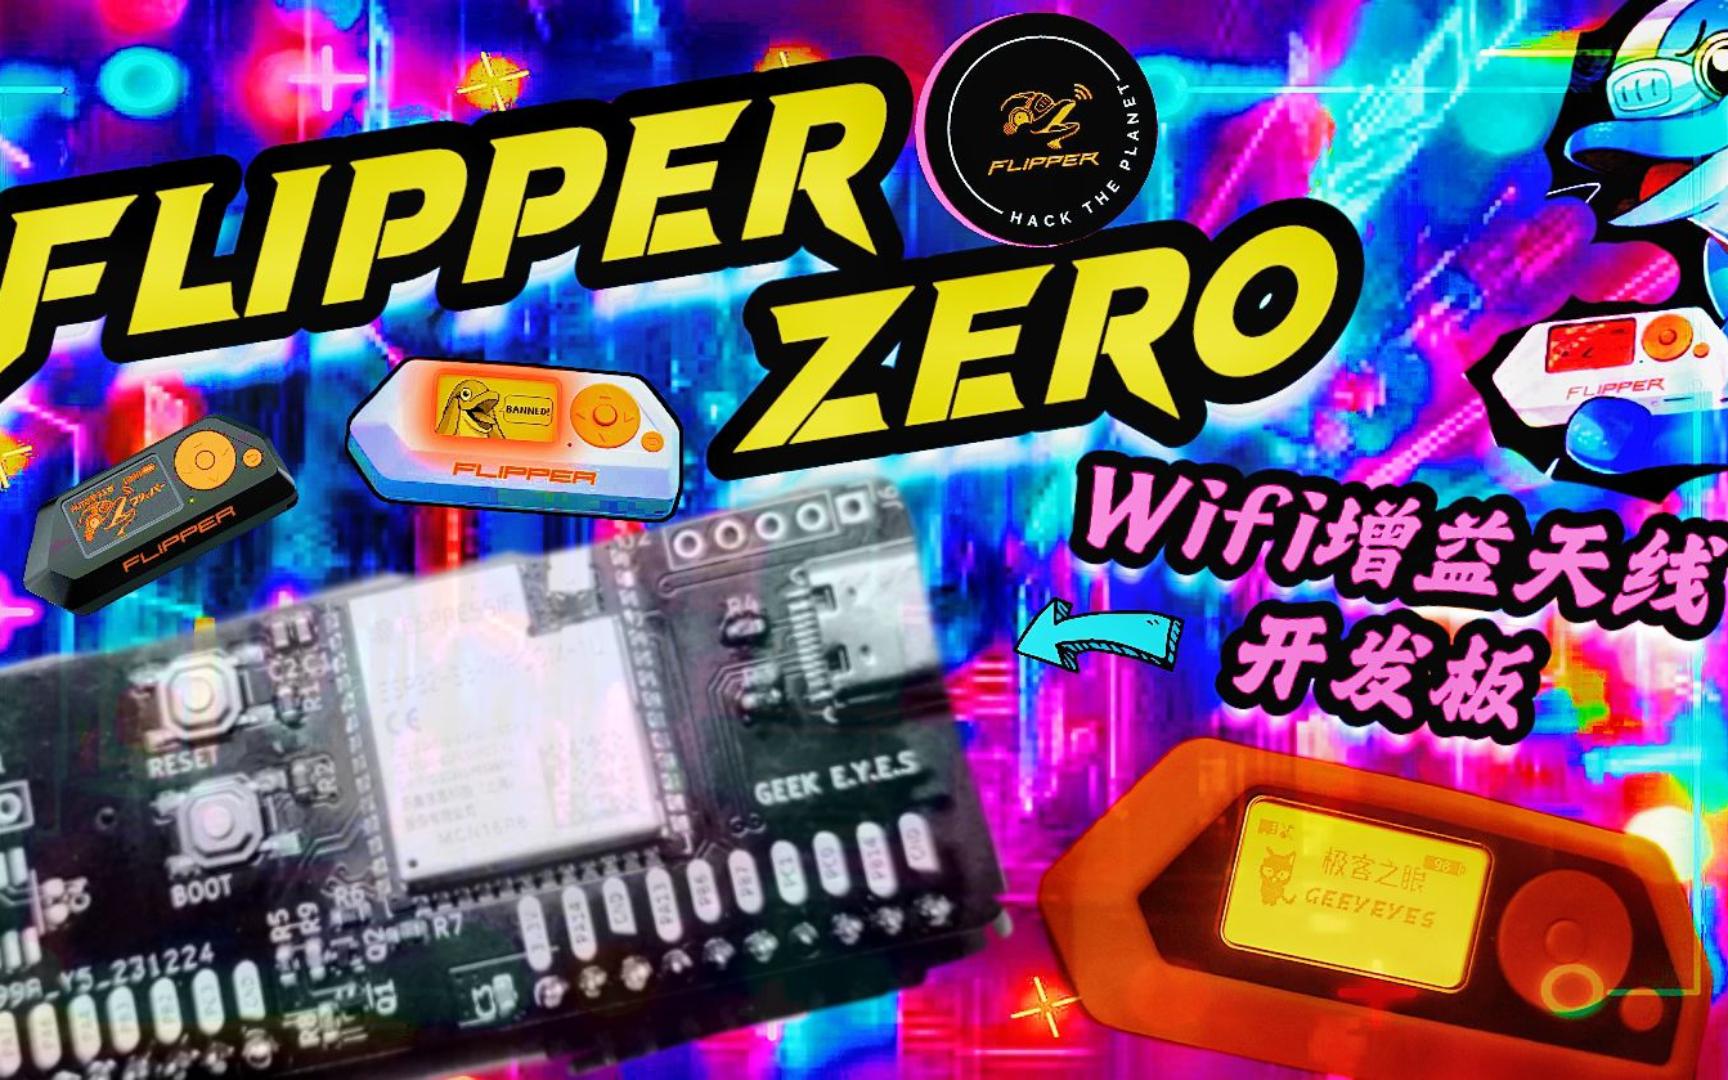 【极客之眼】Flipper zero 大功率wifi物联网开发板 无线网络安全测试硬件